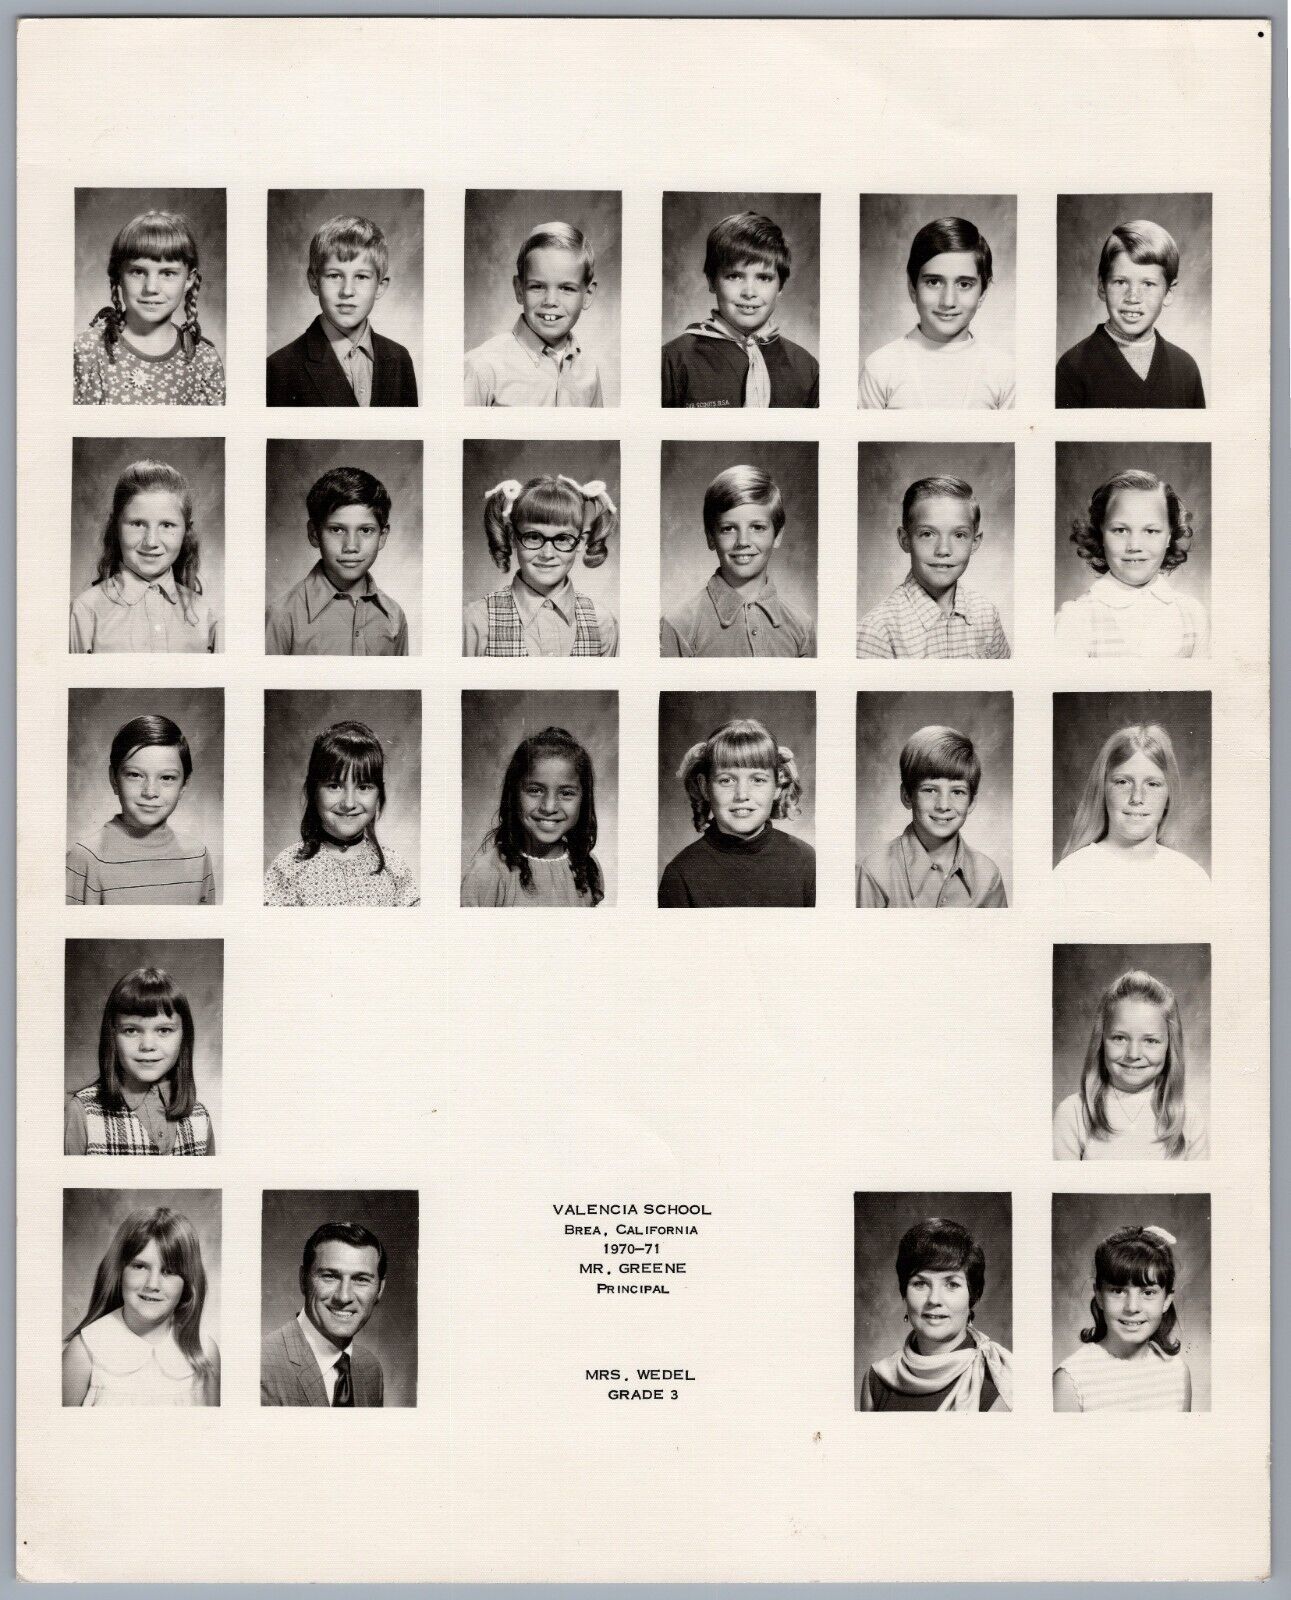 1970 Valencia School Brea, California Class Photo 3rd Grade Mrs. Wedel